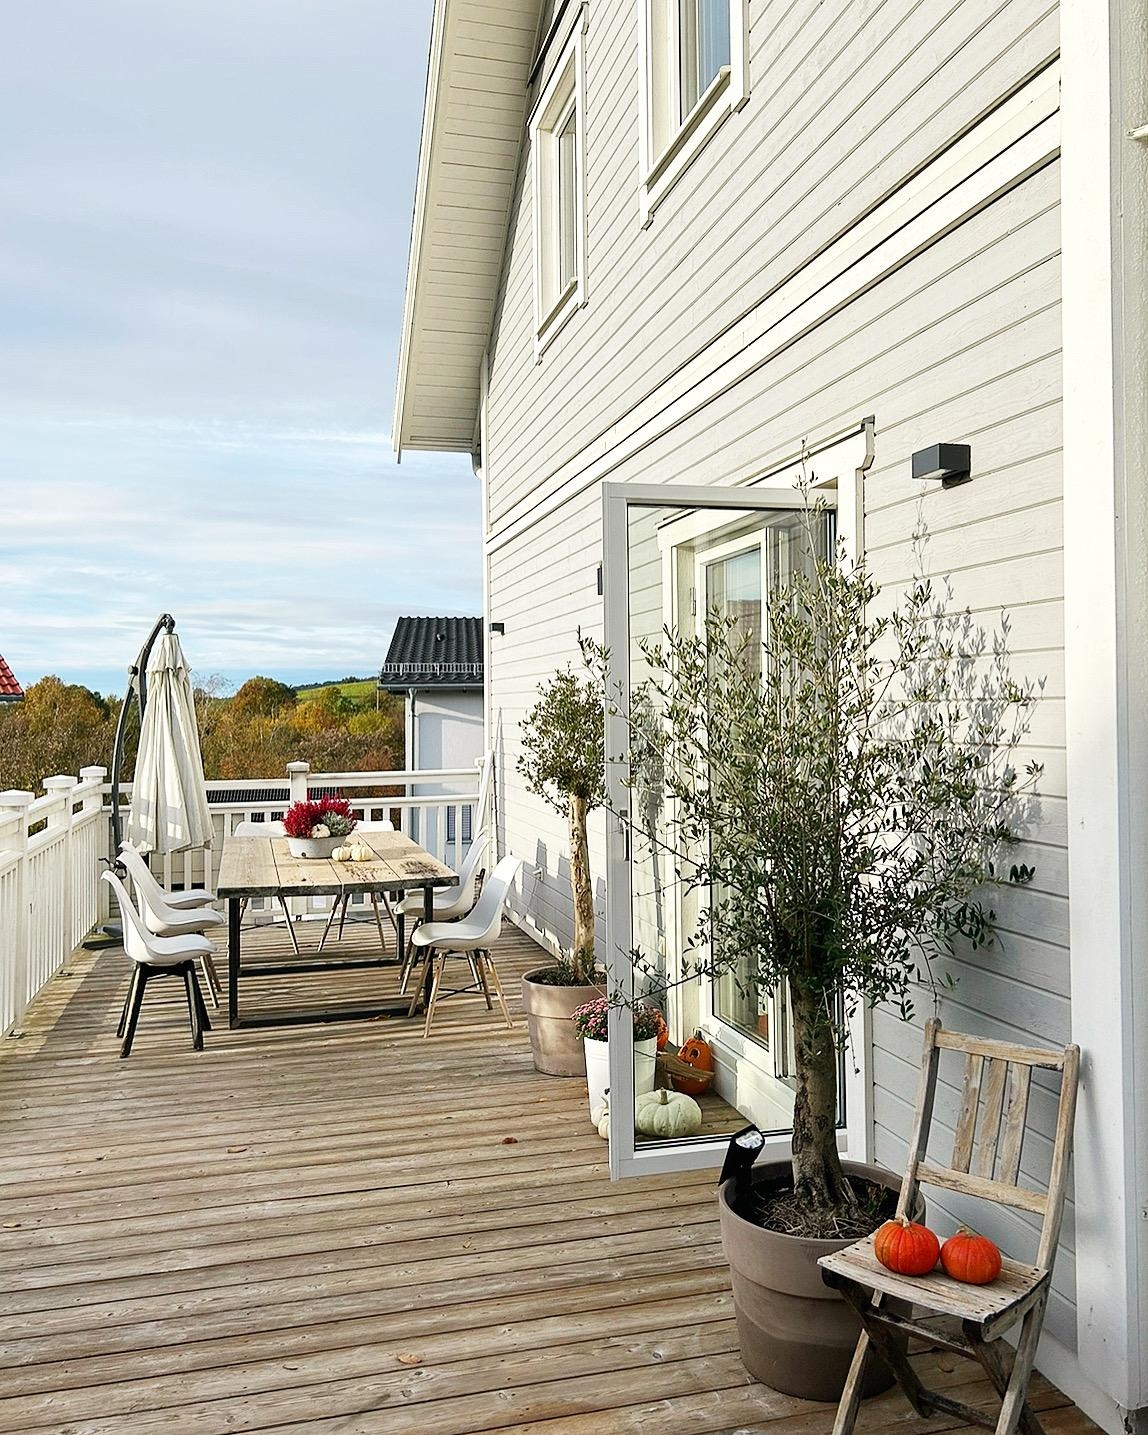 Sonnenmomente... #herbsttage #schwedenhaus #holzhaus #herbstdeko #skandinavisch #terrasse #kürbis #olivenbaum #hyggelig 